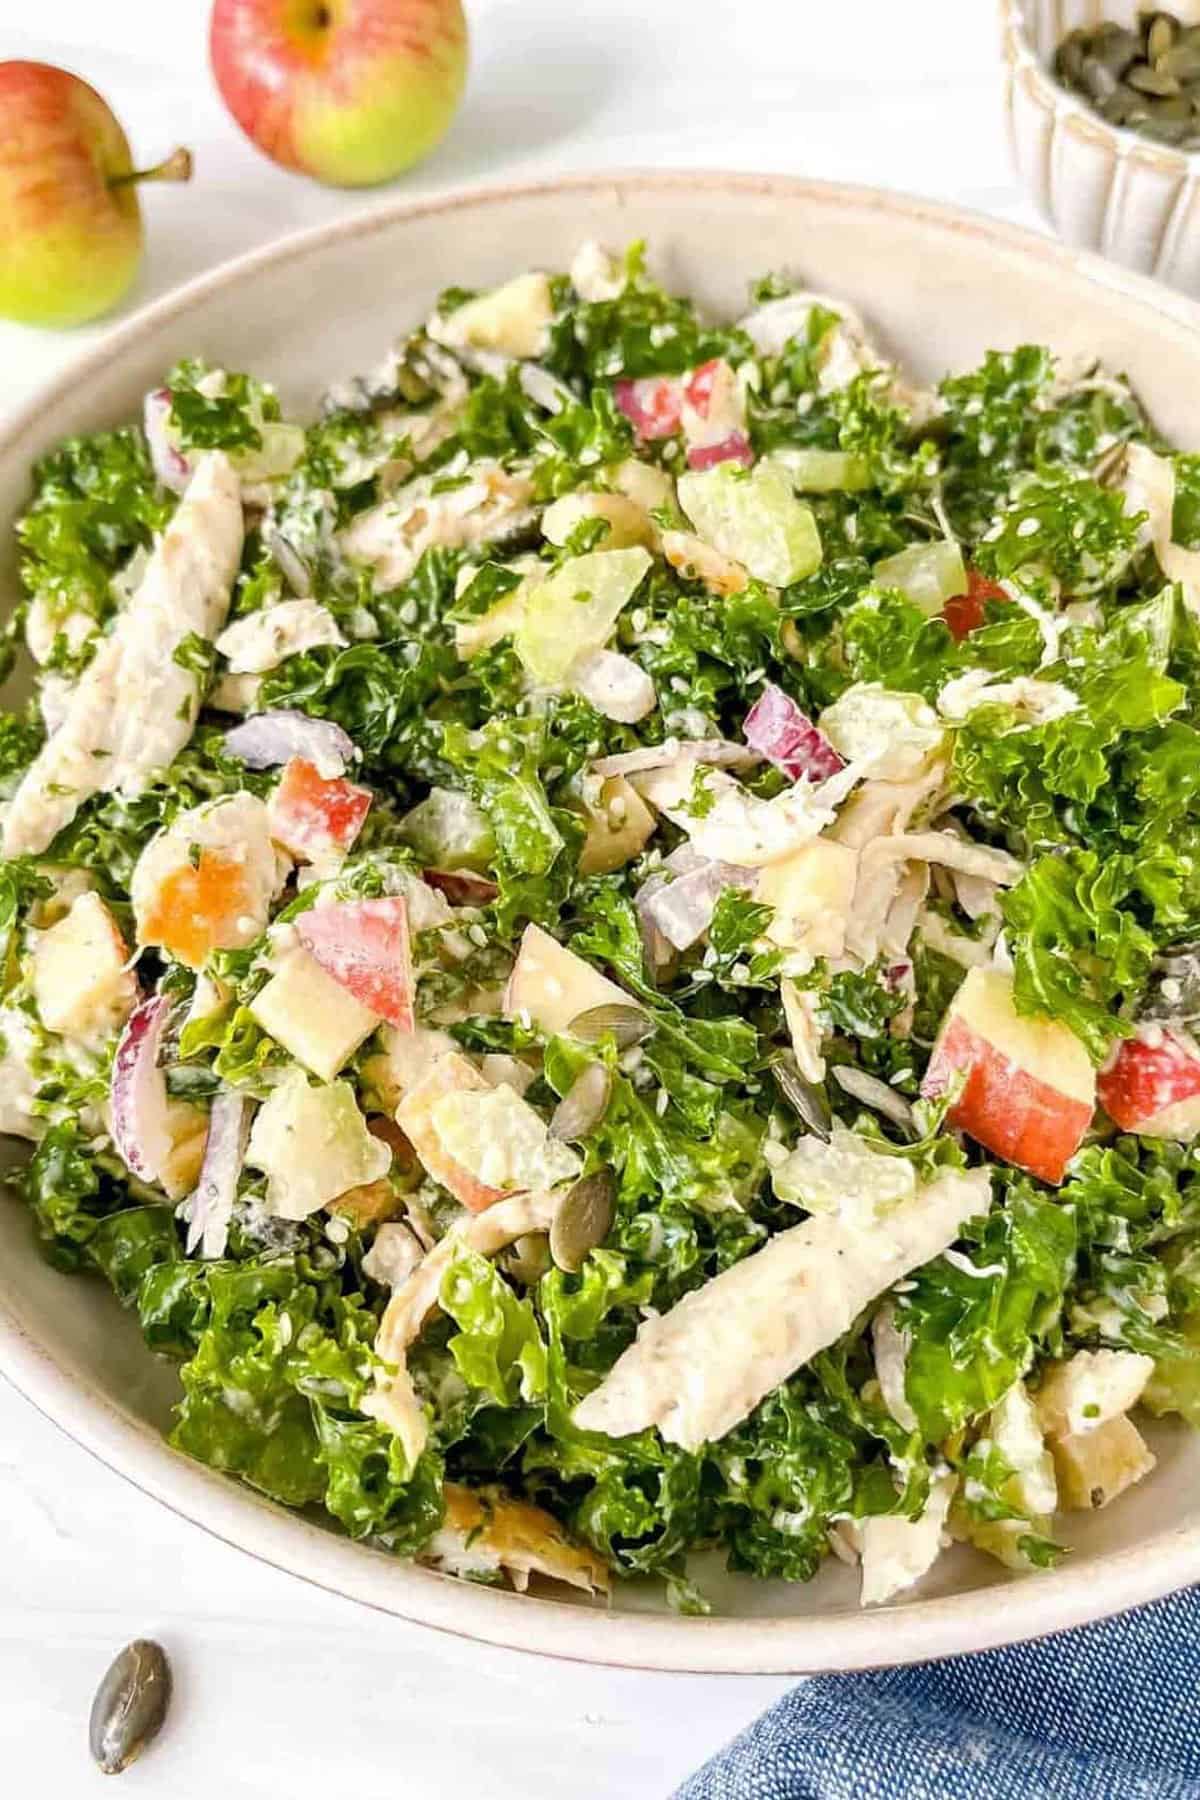 8. Chicken Kale Salad